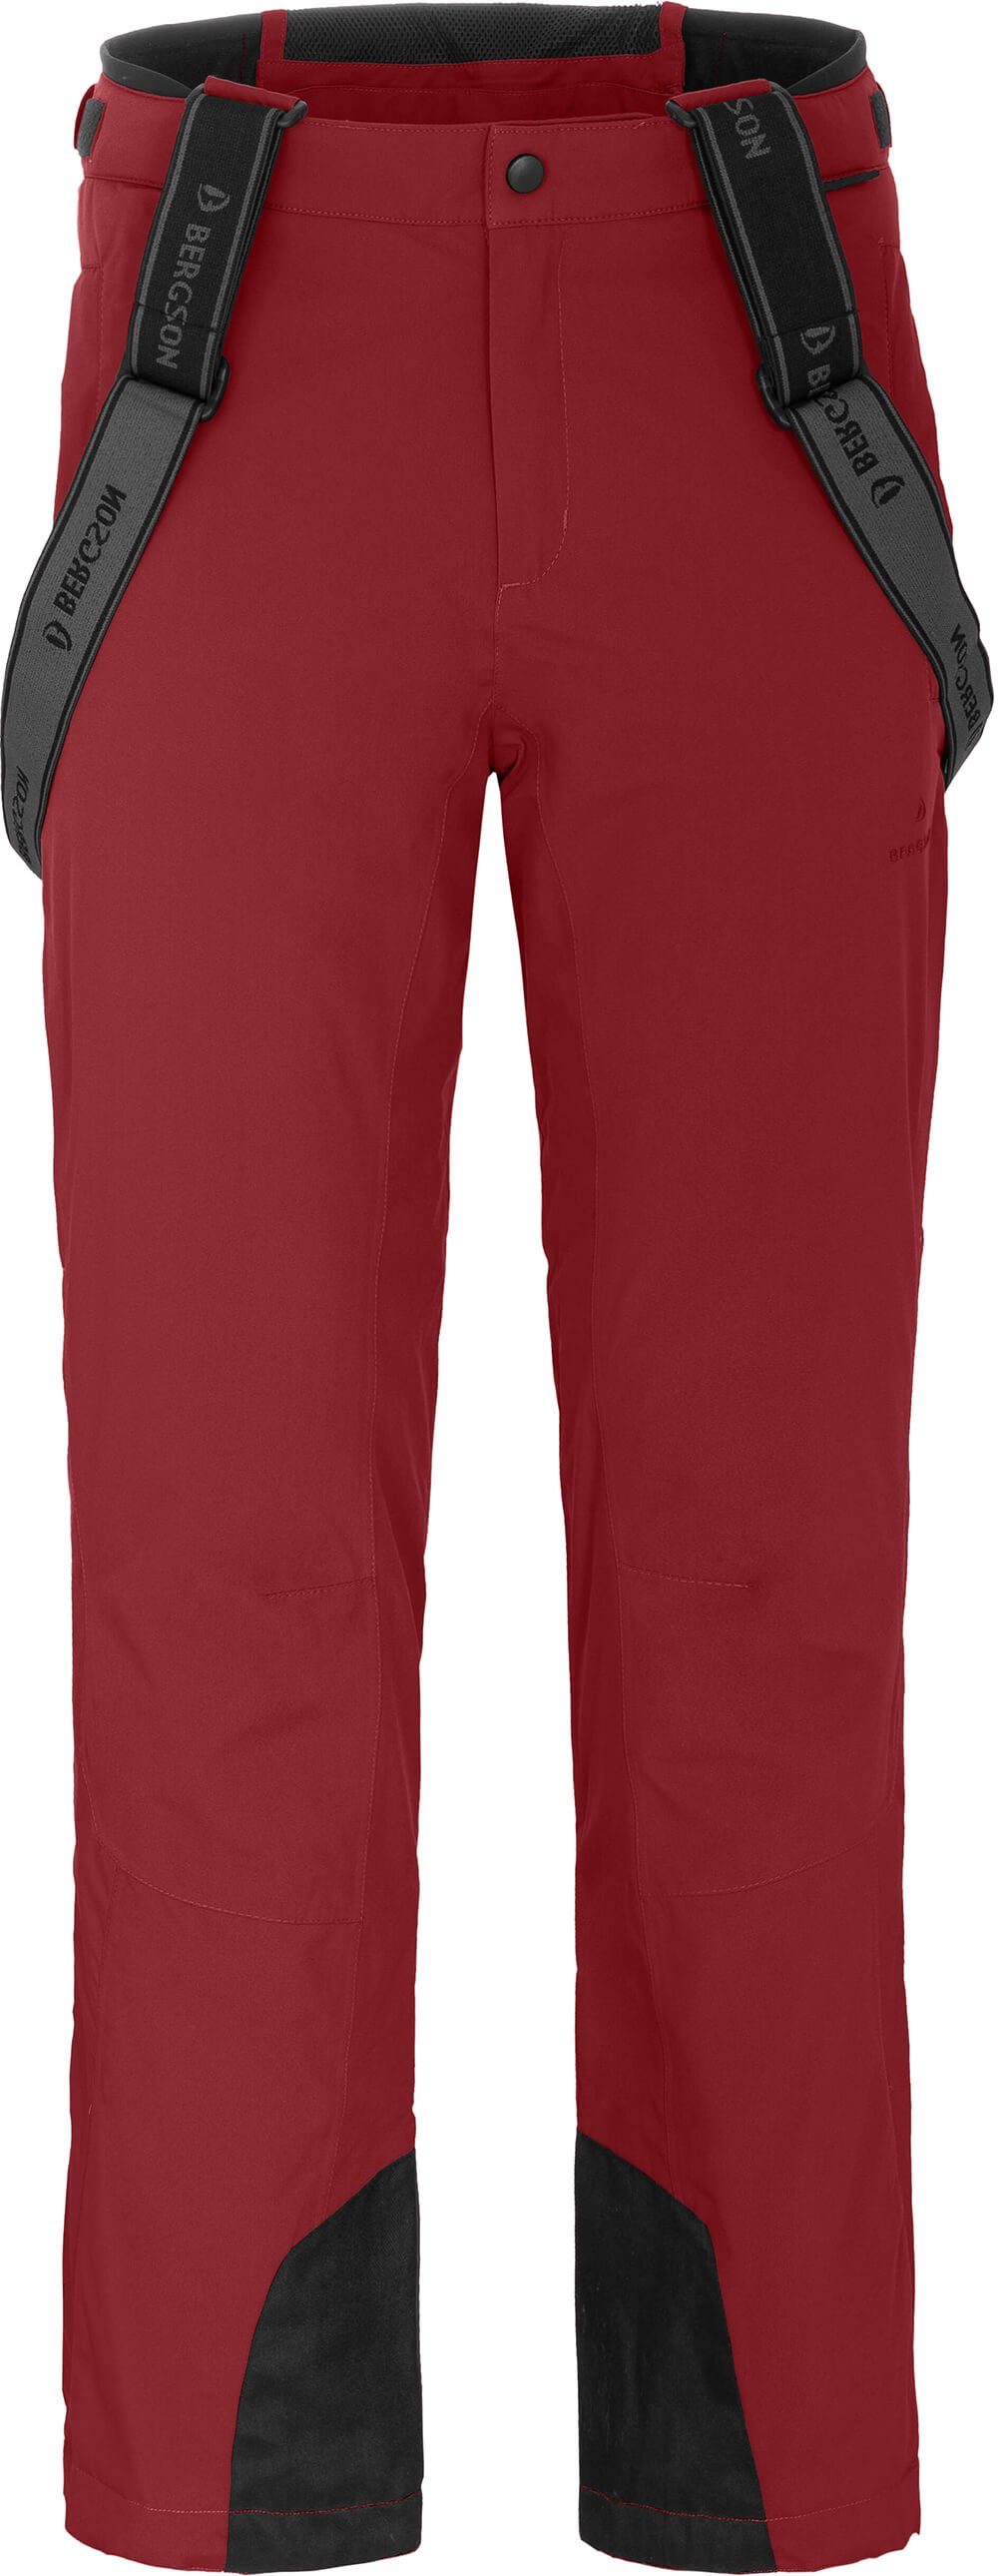 Bergson Skihose FLEX rot Wassersäule, light Normalgrößen, 20000mm Skihose, Herren unwattiert, dahlia